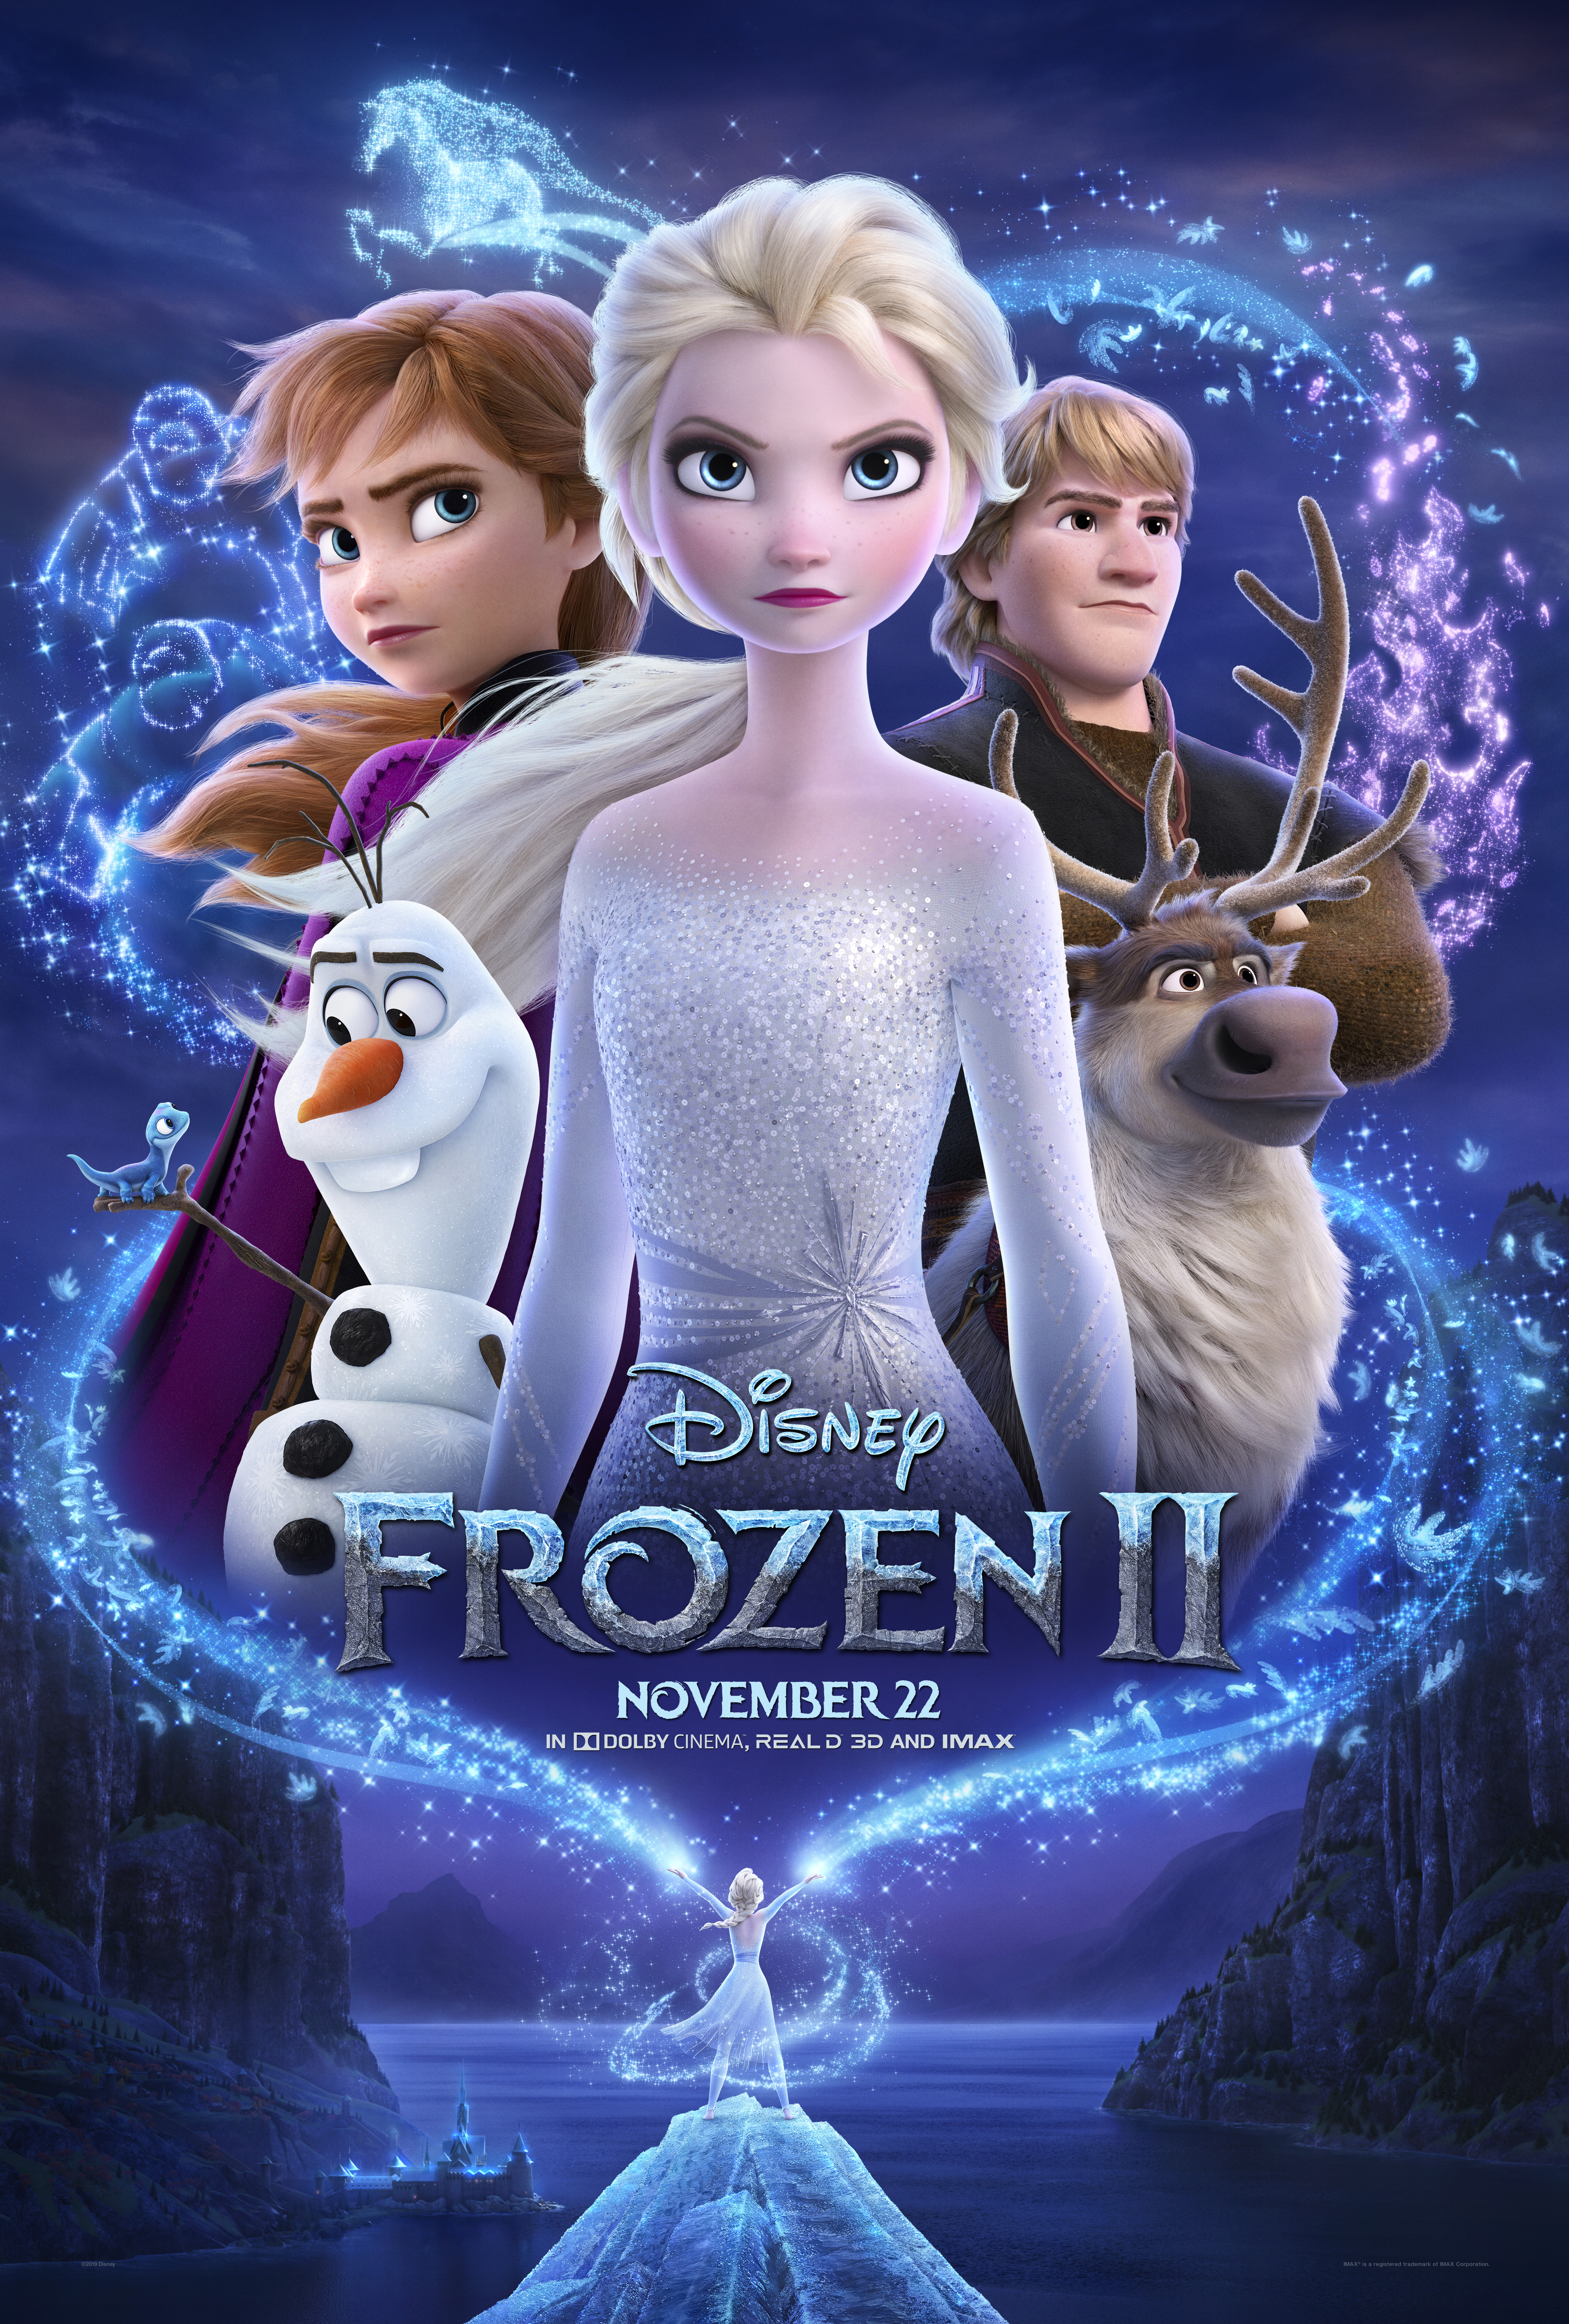 La Reine des neiges (film, 2013) — Wikipédia